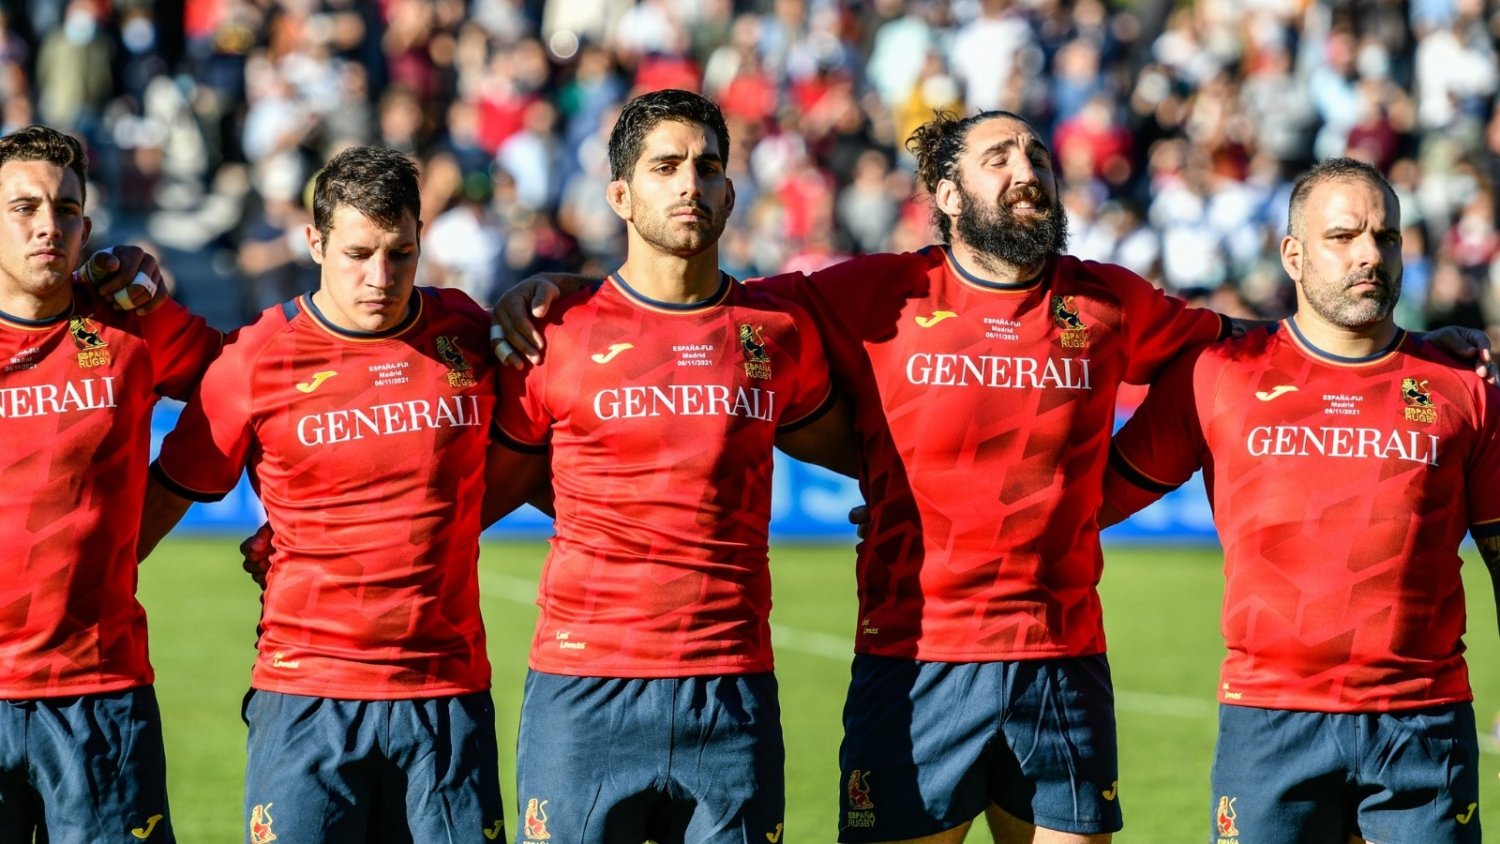 La selecciones de rugby de España y Tonga se hospedarán y entrenarán en Torremolinos